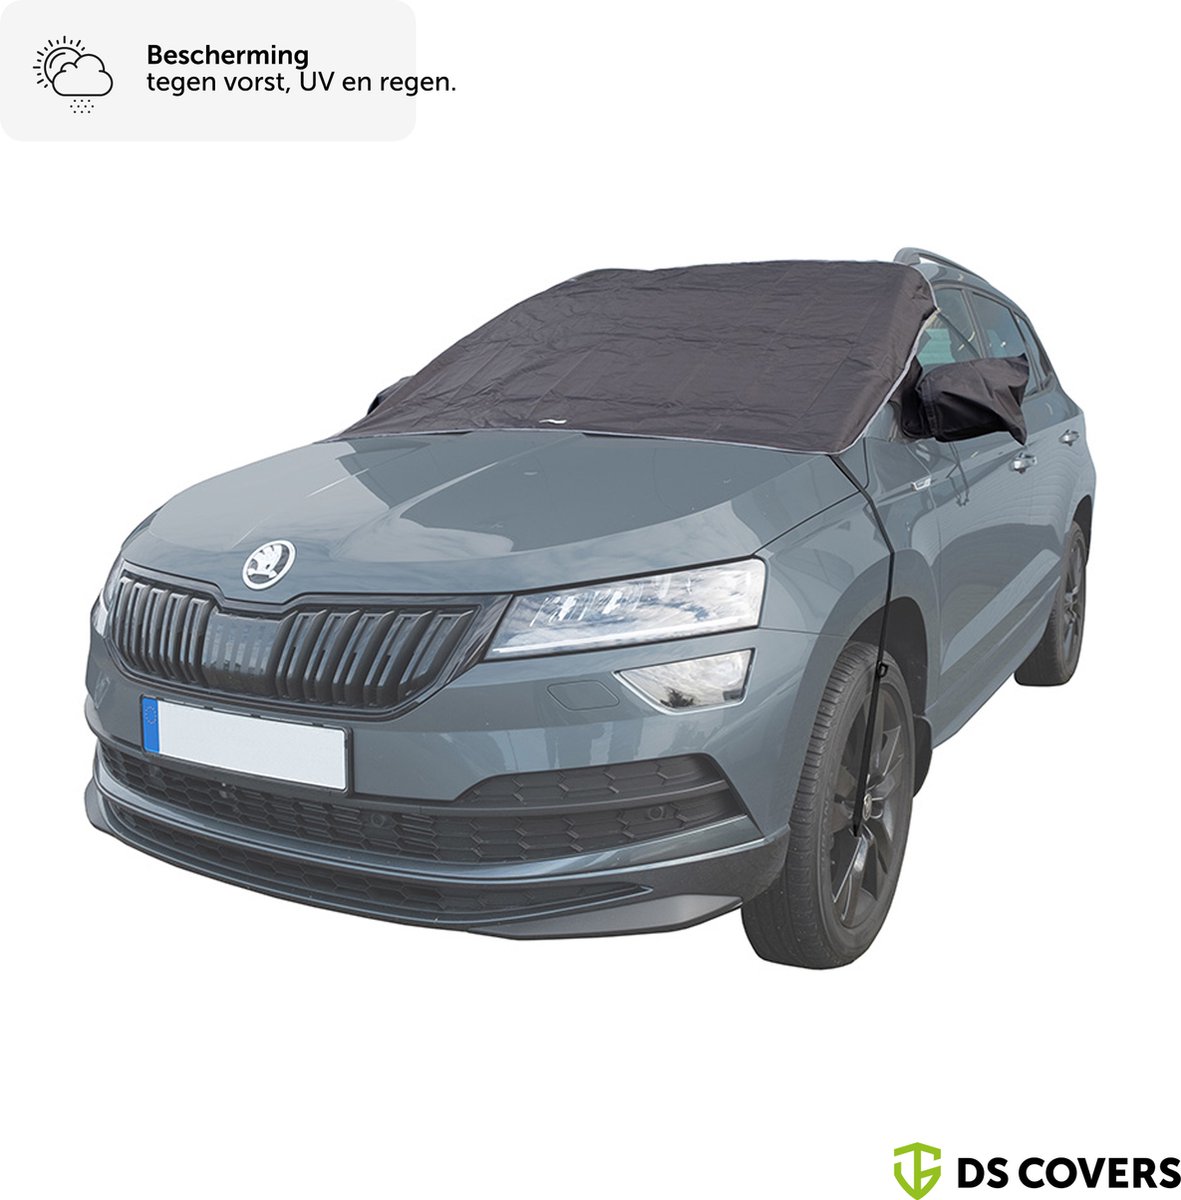 BLIZZ autovoorruithoes van DS COVERS – Outdoor – Waterdicht – UV bescherming – 300D Oxford – Universeel; past op alle autovoorruiten